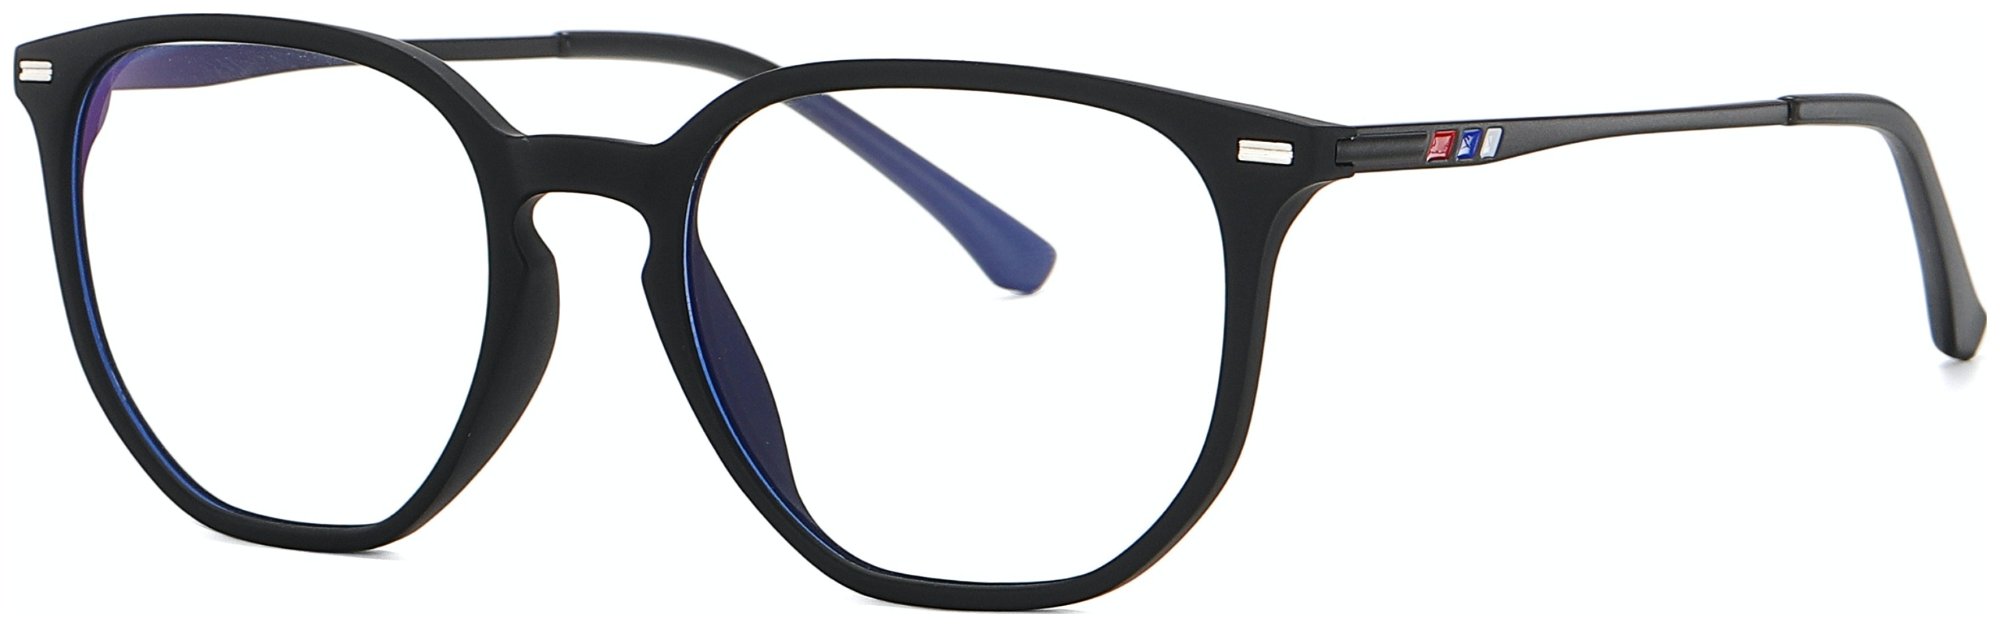 Regulær bluelight briller, Intro by Kaleu (H: 5,4 cm. x B: 2 cm. x L: 14,5 cm., Matsort)